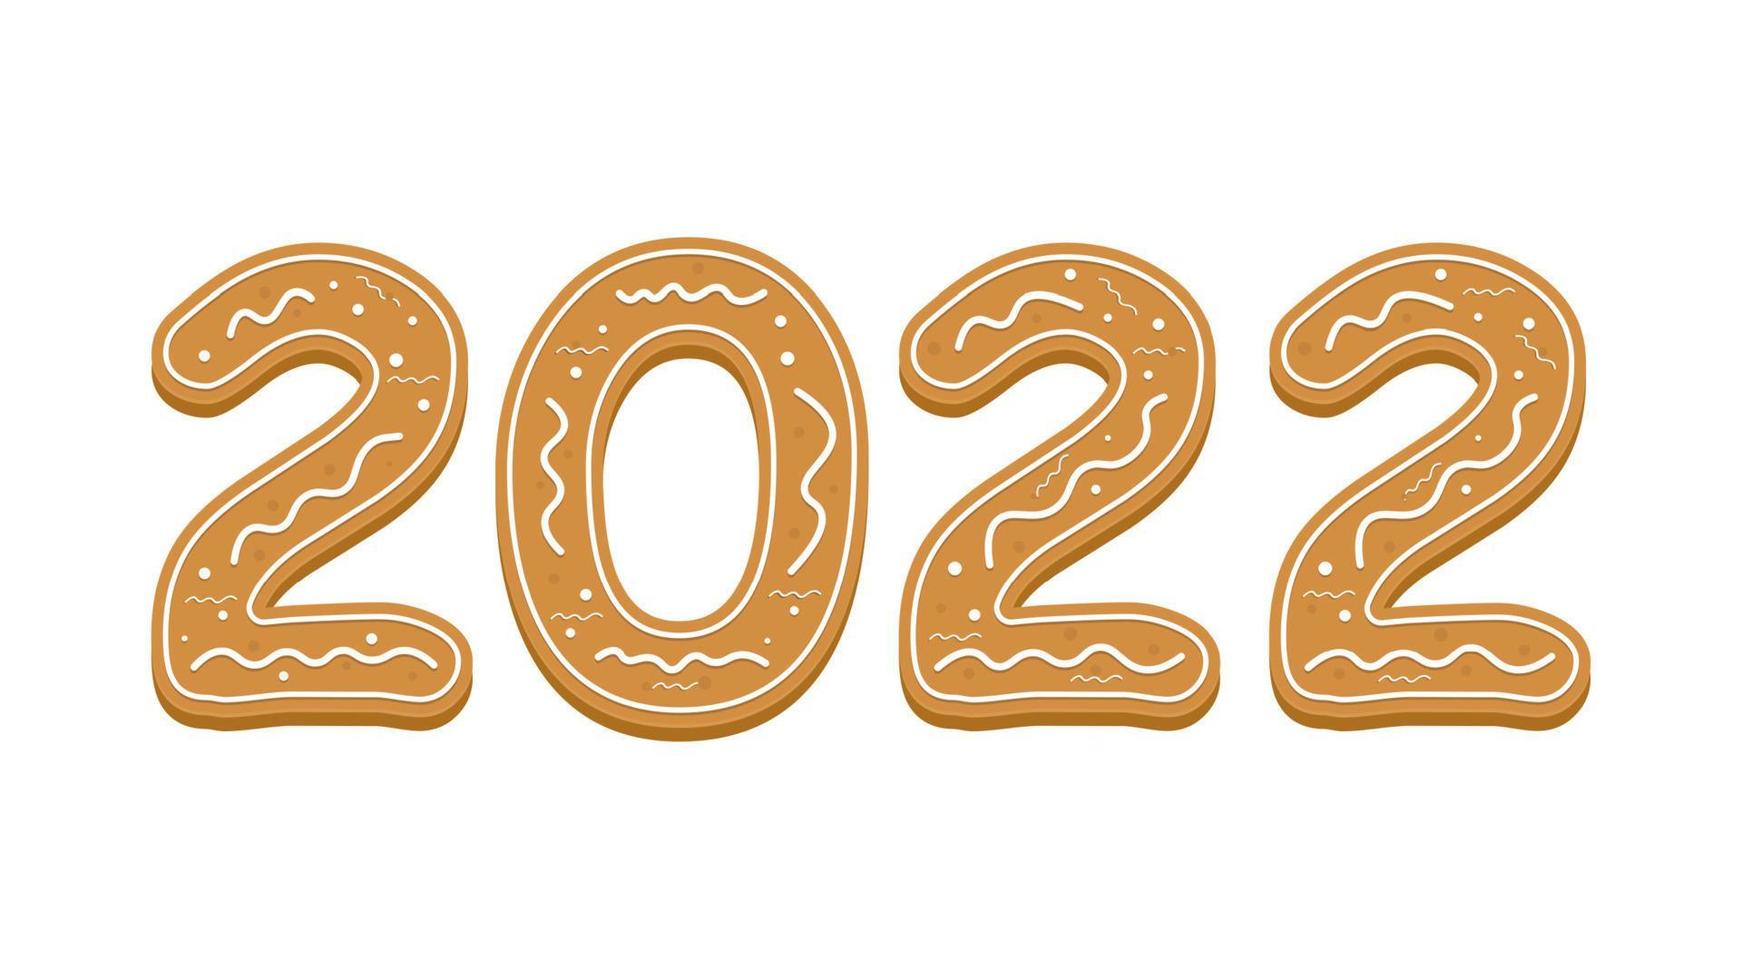 joyeux noël et bonne année 2022 carte de voeux de pain d'épice de dessin animé avec l'année 2022 vecteur